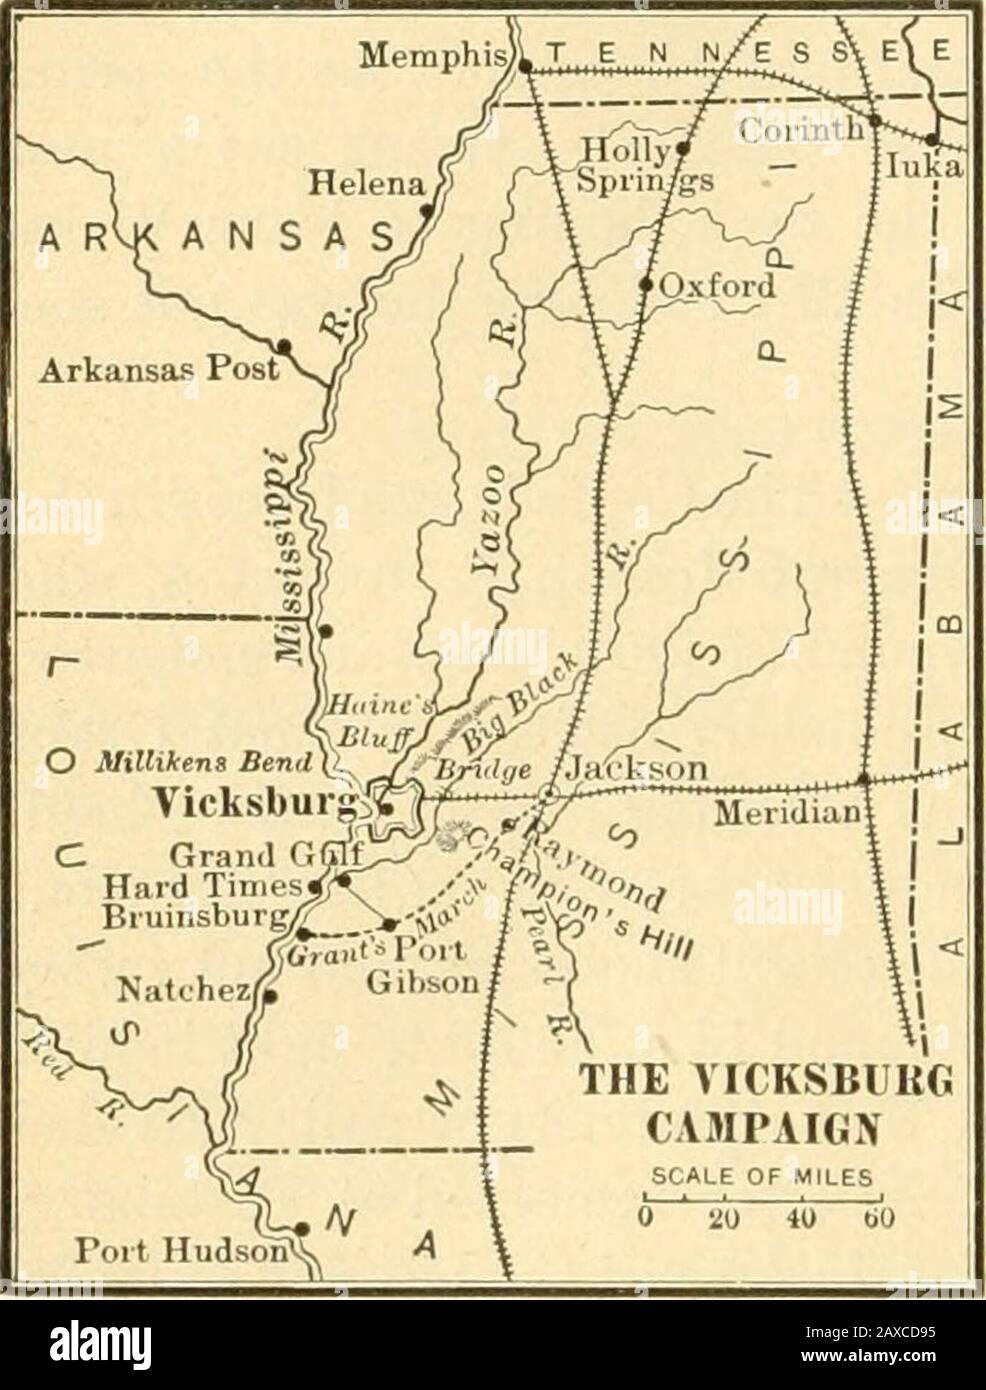 Eine Geschichte der Vereinigten Staaten . neunzehn daysGrant hatte den großen Fluss in die Territoiie der Enemys überschritten; hatte ein hundertzigstel Meilen durch ein schwierigstes Land gemartert, das ständig umhergeschleudert wurde; hatte fünf verschiedene Schlachten gekämpft und gewonnen. . hatte das Staatskapital eingenommen und seine Arsenale und Militärmanufakturen zerstört und war nun im hinteren Teil von Vicksburg. - Rhodes, Geschichte, Vol. IV, S. 310. 2 Die Grants zu Beginn der Belagerung waren ungefähr 43.000, die Butthey wurden so ständig neu durchgesetzt, dass er am Ende nicht weniger als ca. 75.000 hatte. Offizielle Berichte der Confe Stockfoto